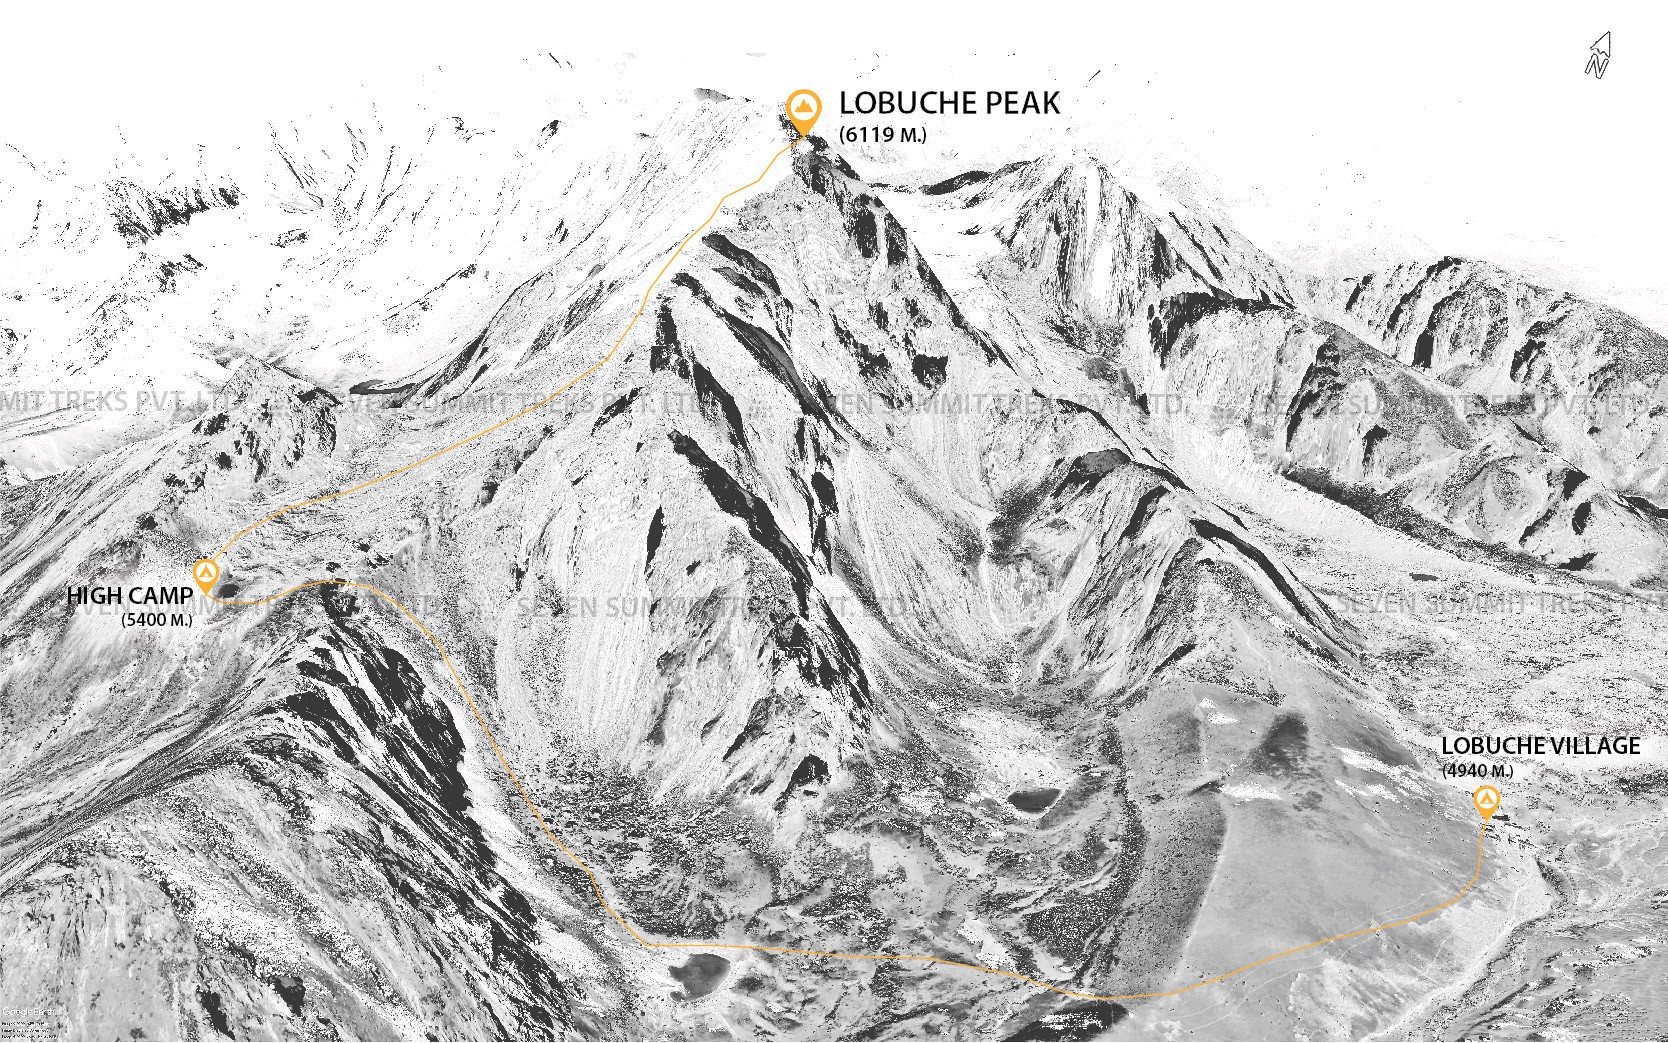 LOBUCHE PEAK EXPEDITION (6119M)